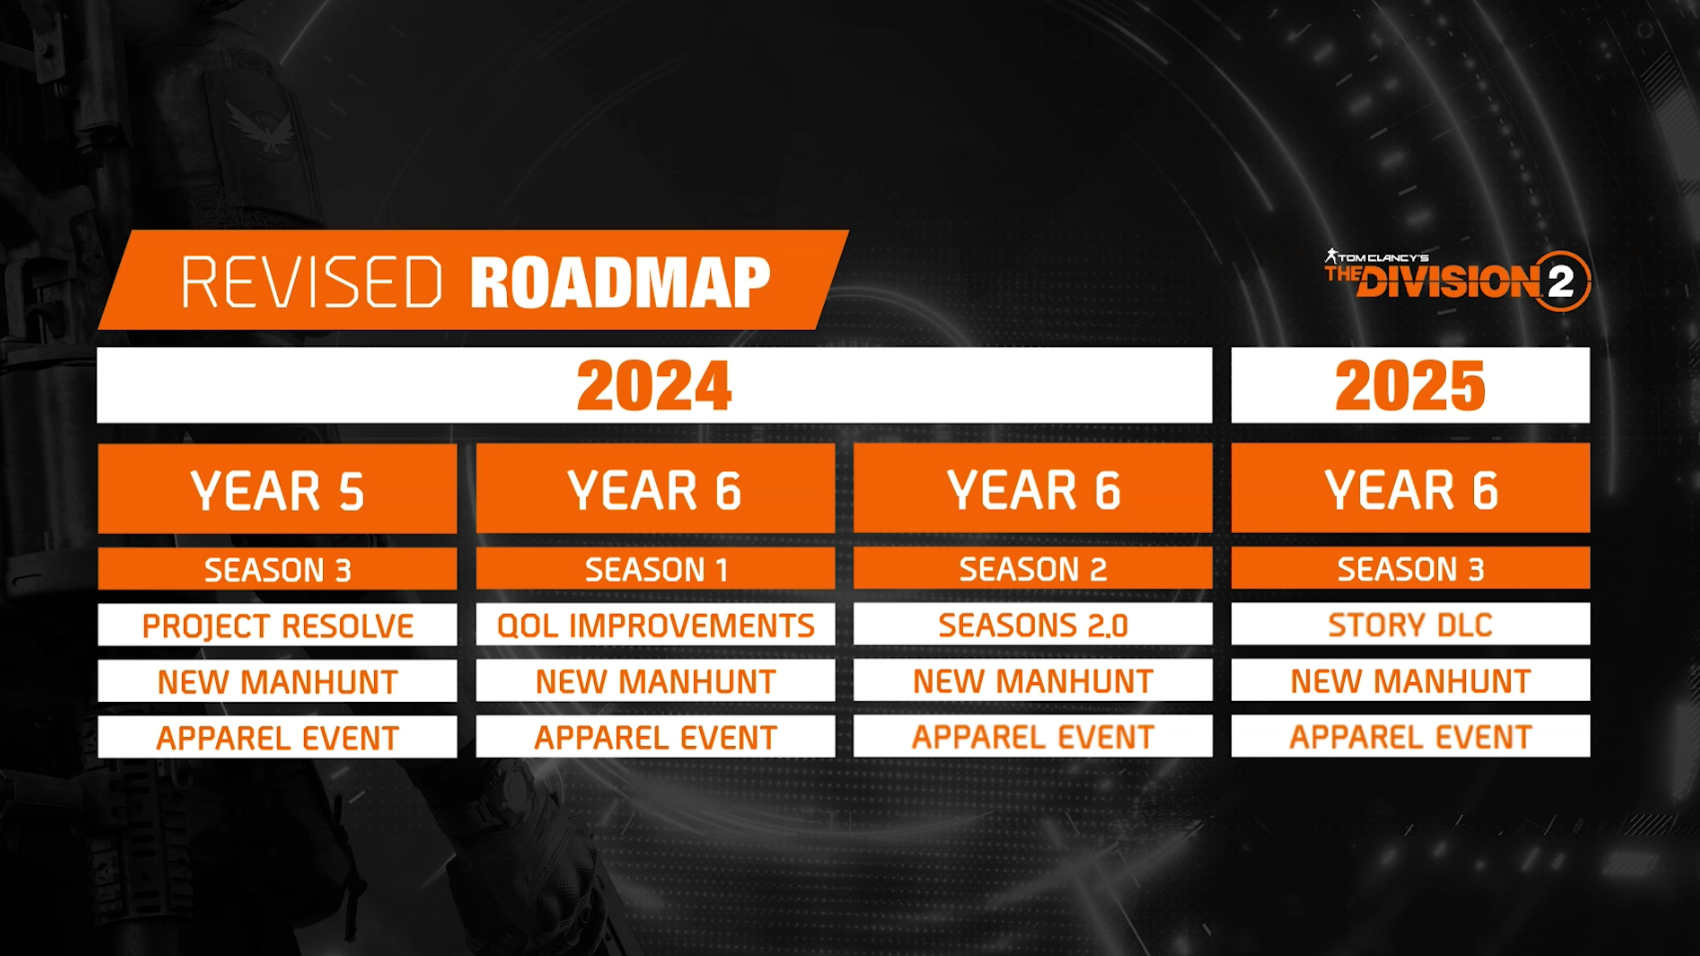 Die Roadmap der Division 2 für 2024 und 2025